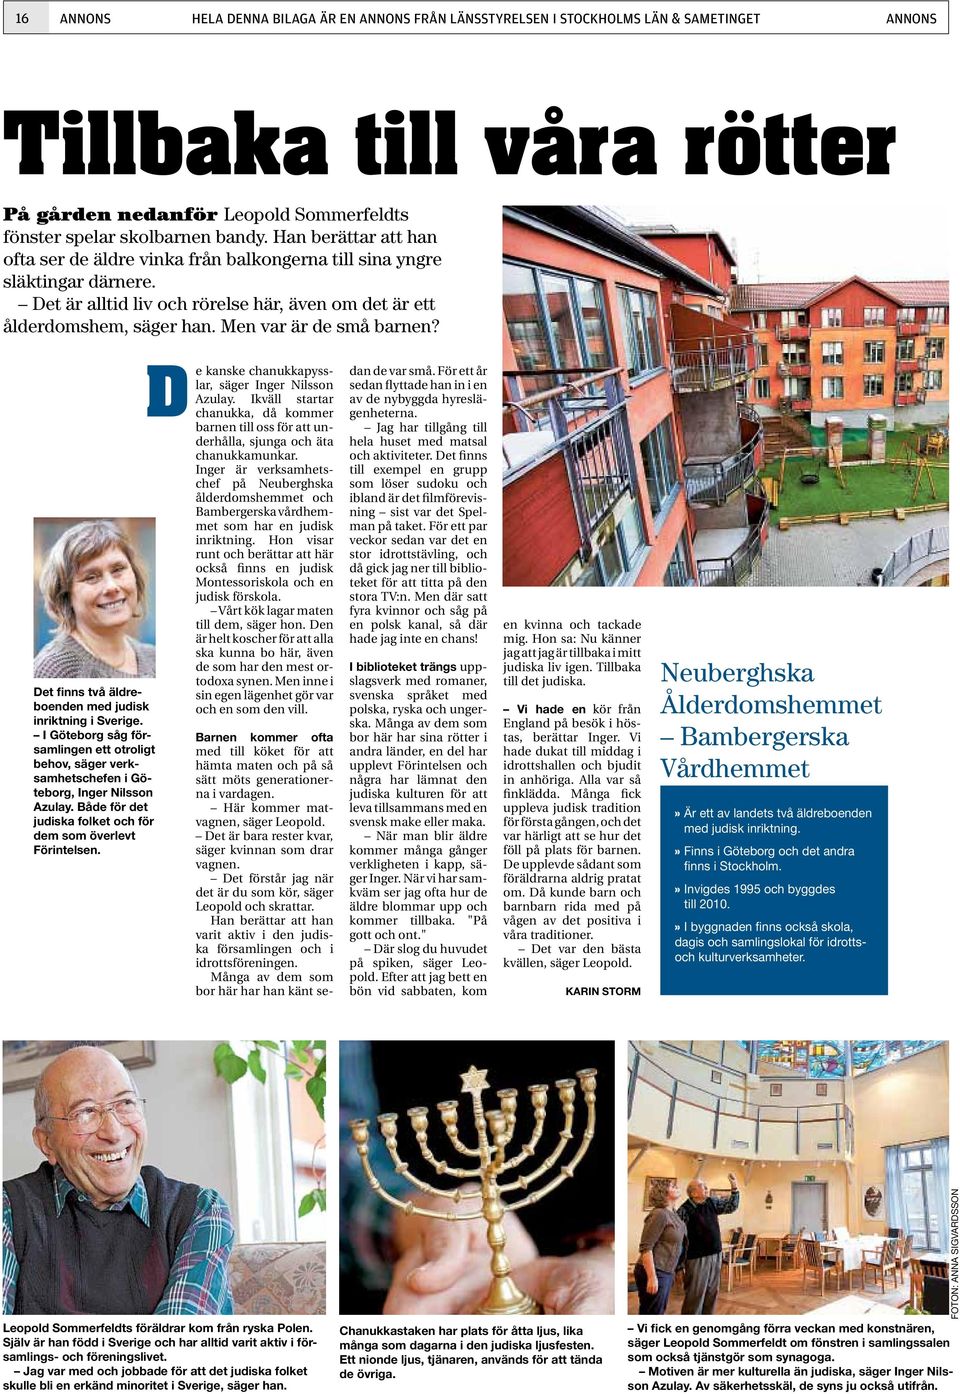 Men var är de små barnen? Det finns två äldreboenden med judisk inriktning i Sverige. I Göteborg såg församlingen ett otroligt behov, säger verksamhetschefen i Göteborg, Inger Nilsson Azulay.